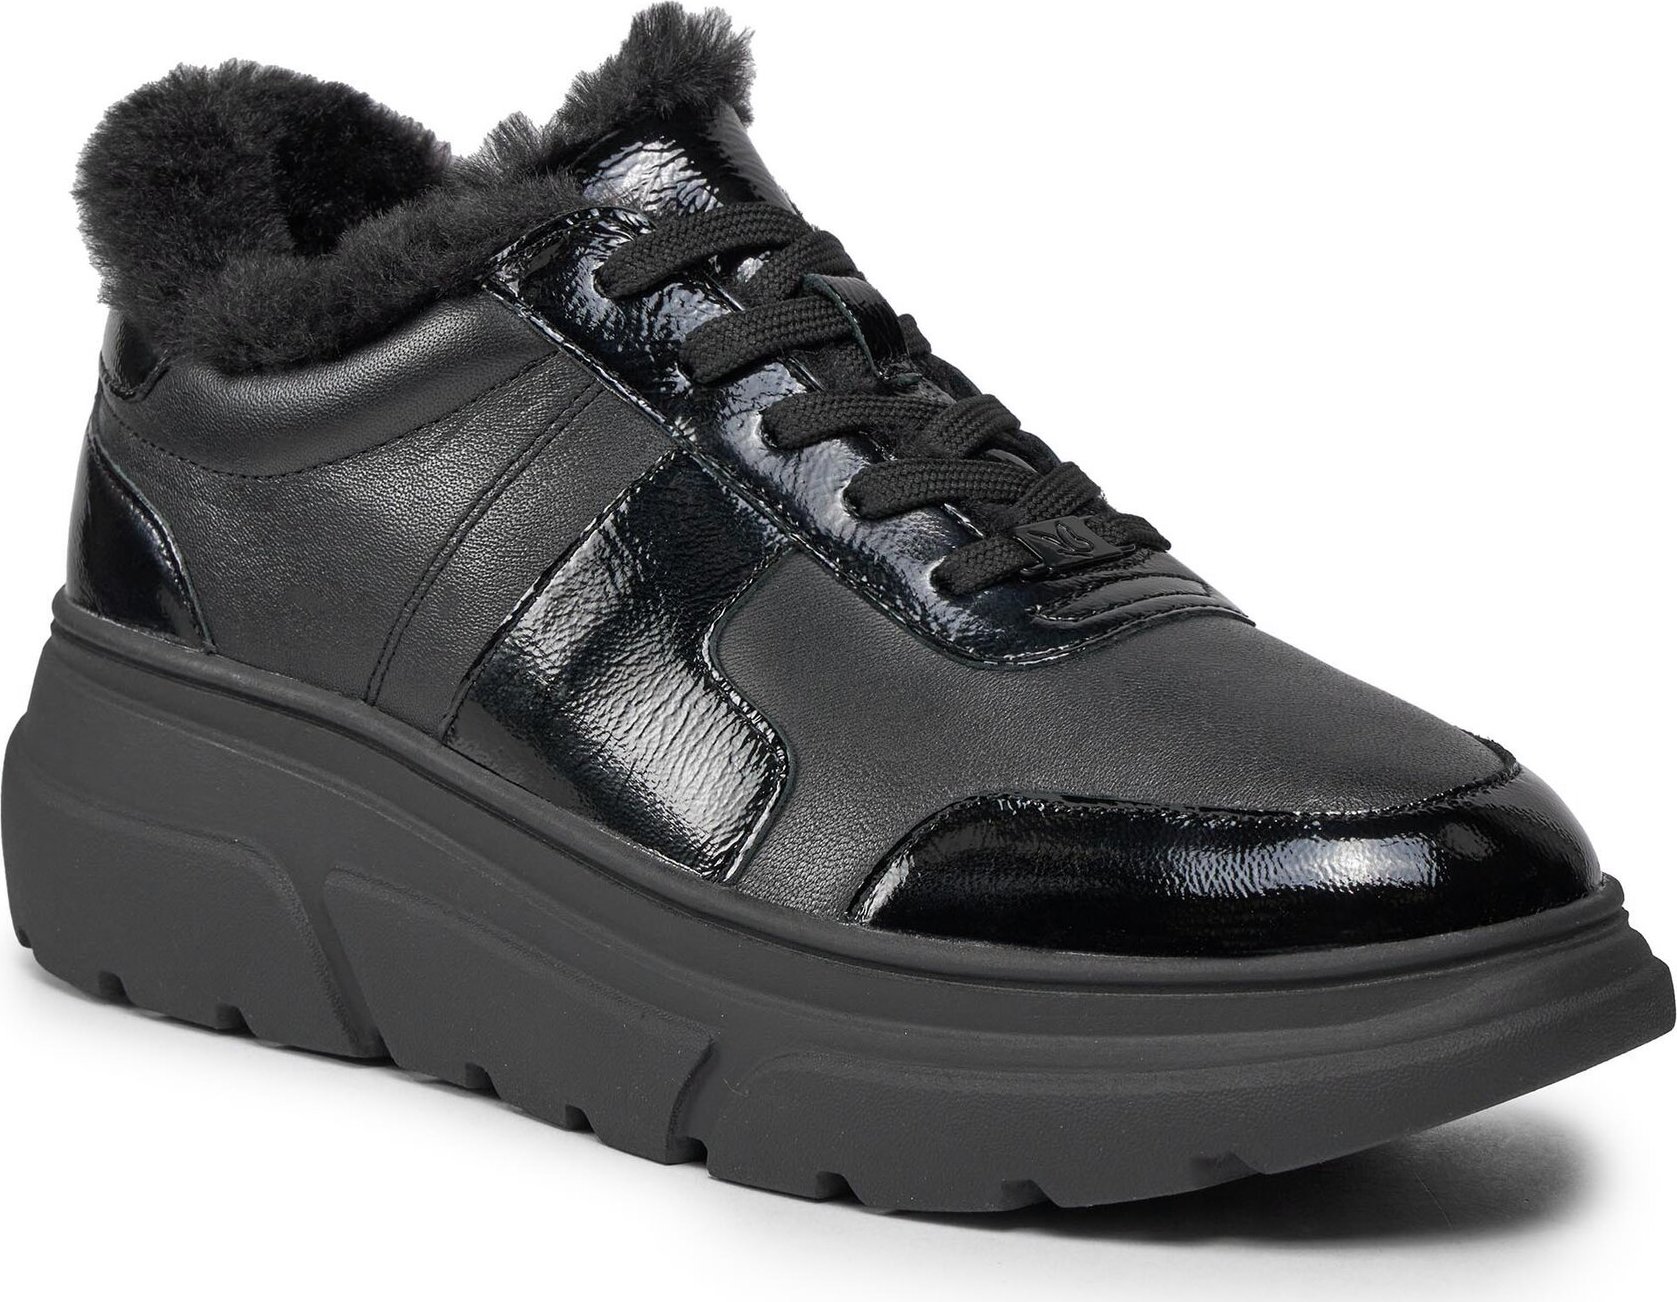 Sneakersy Caprice 9-23704-41 Black Comb 019